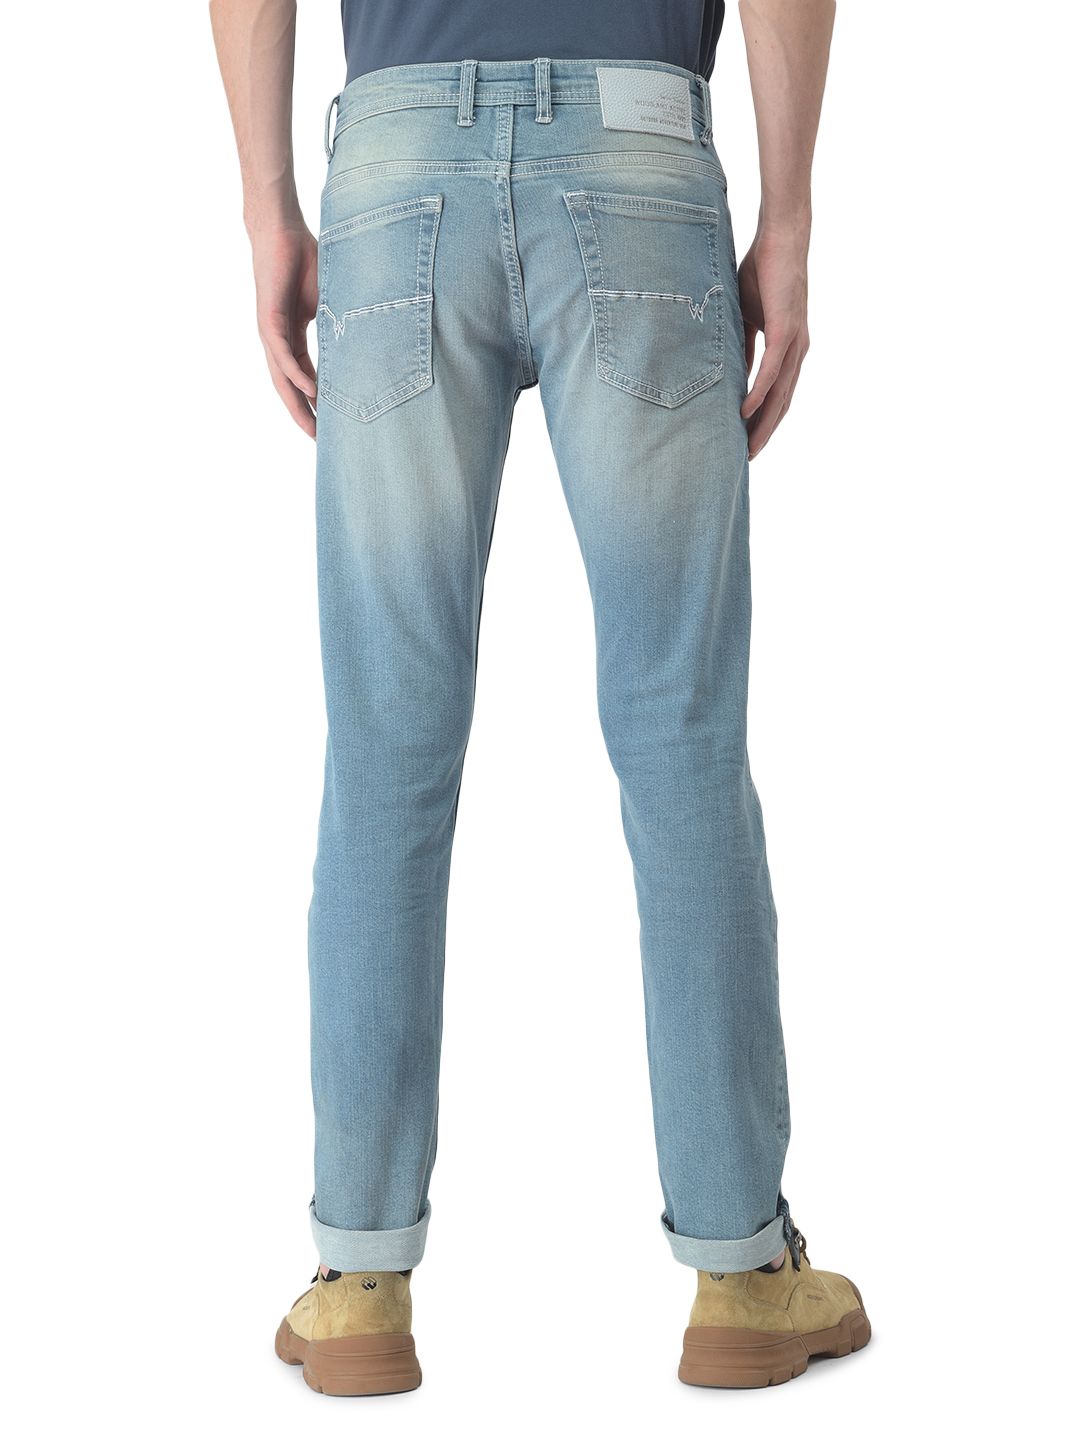 Blue Jeans for Men